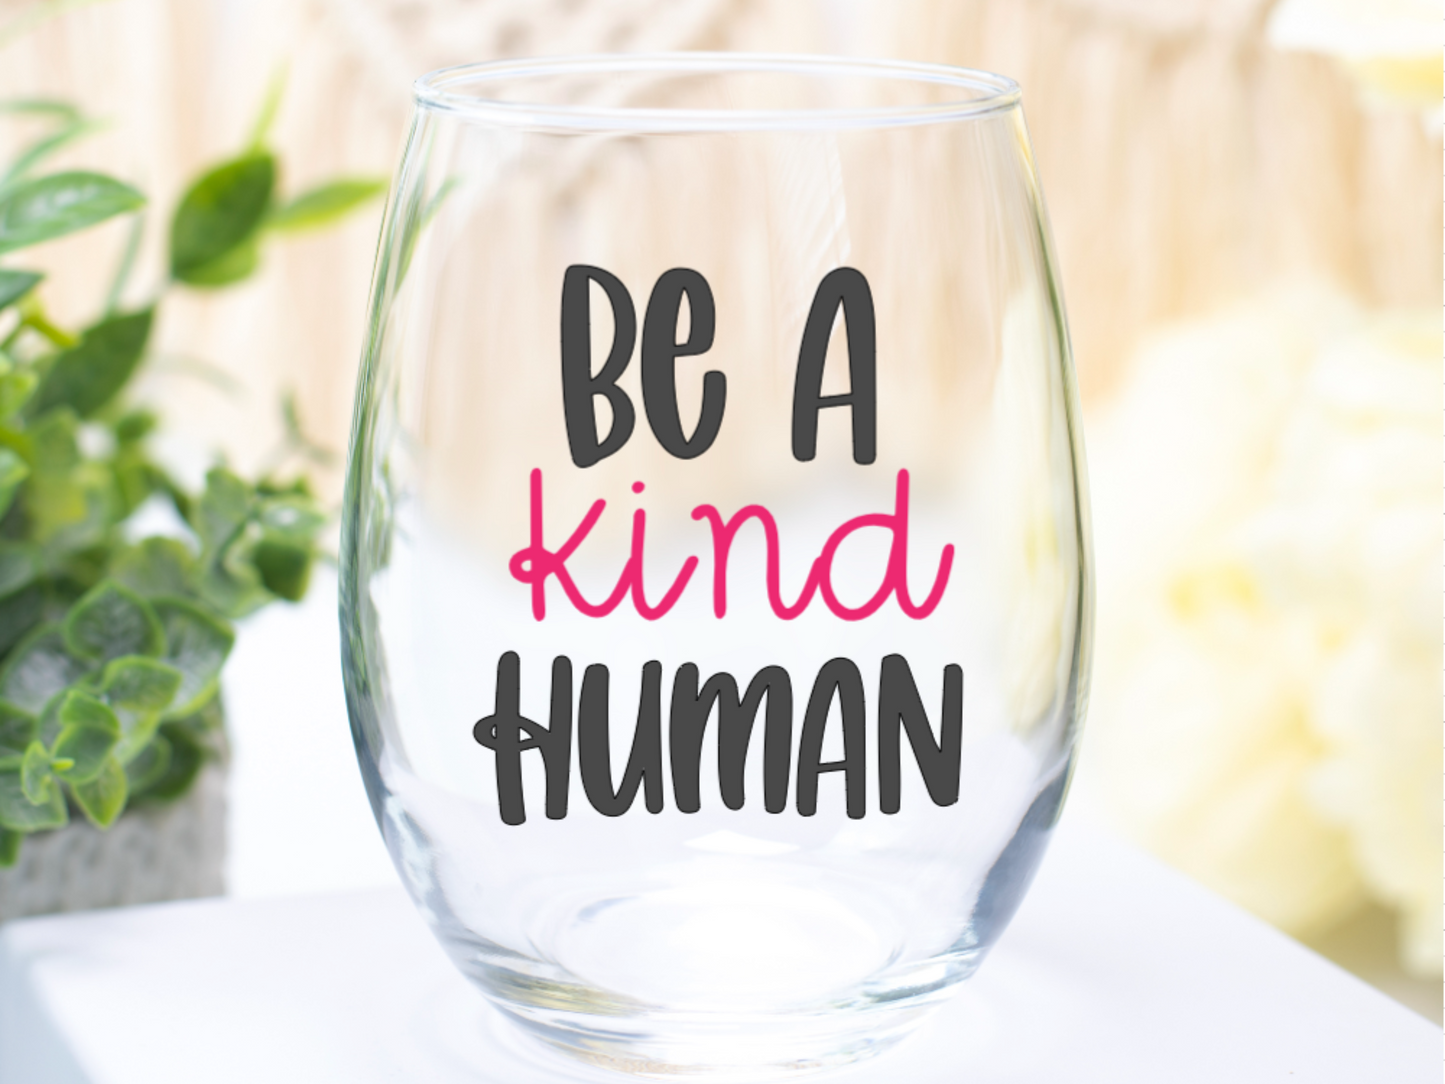 Be A Kind Human Wine Glass